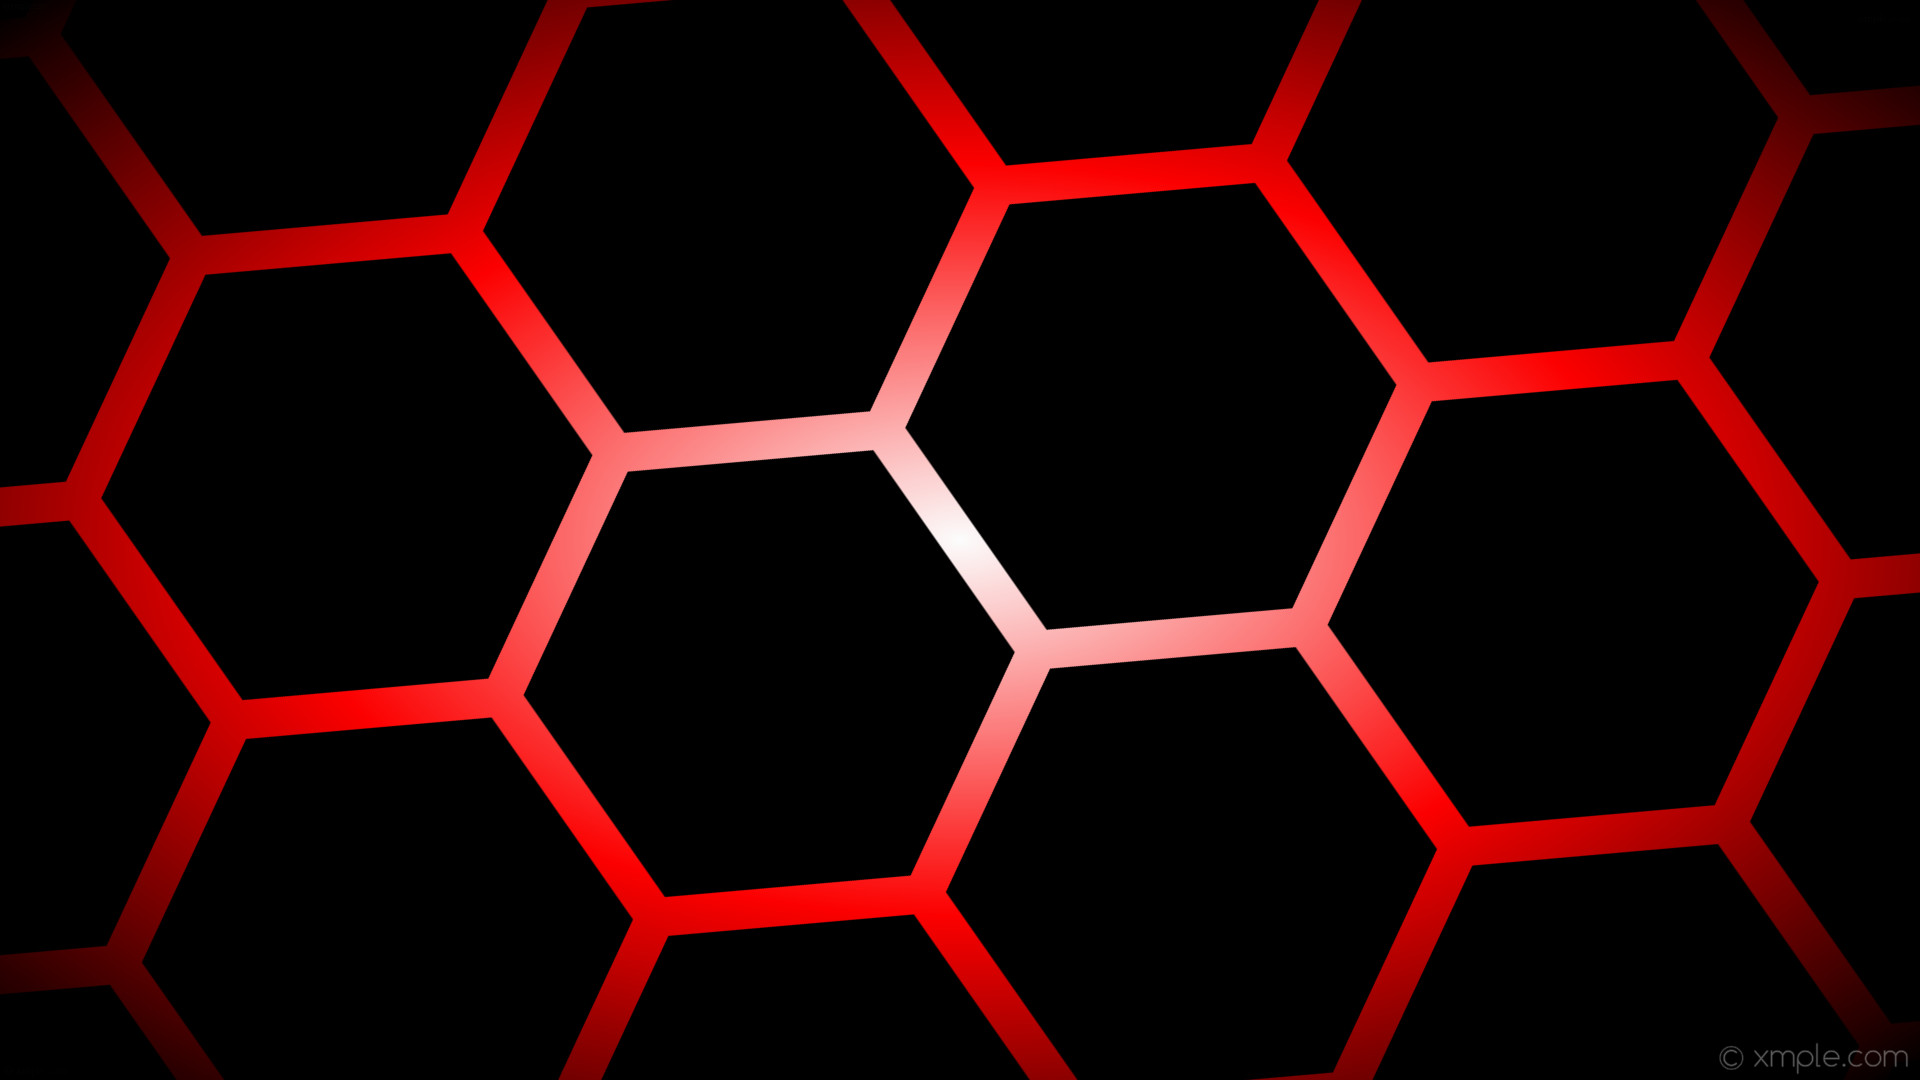 1920x1080 wallpaper black glow hexagon white gradient red #000000 #ffffff #ff0000  diagonal 35Â°